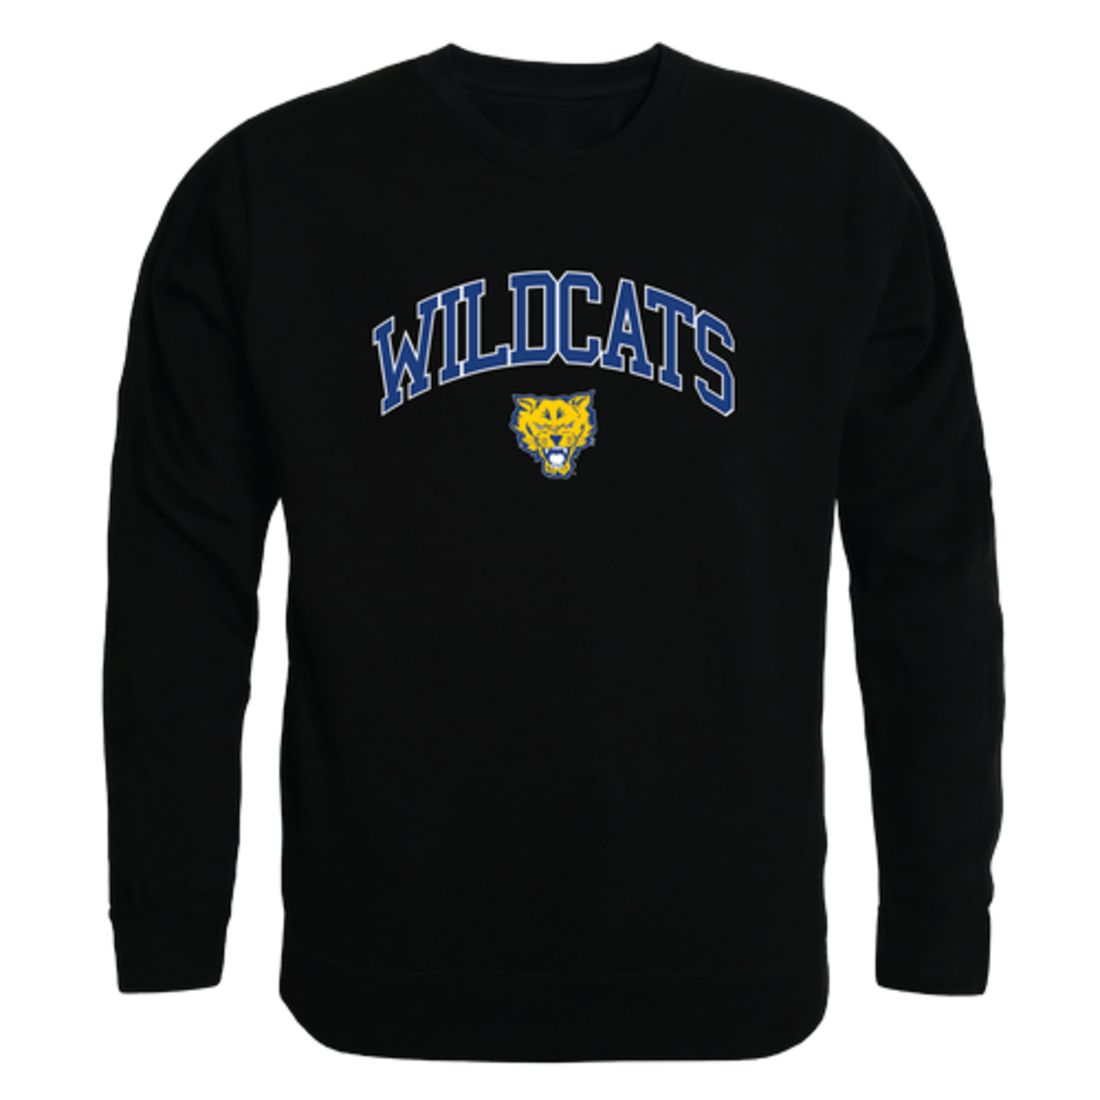 Fort-Valley-State-University-Wildcats-Campus-Fleece-Crewneck-Pullover-Sweatshirt